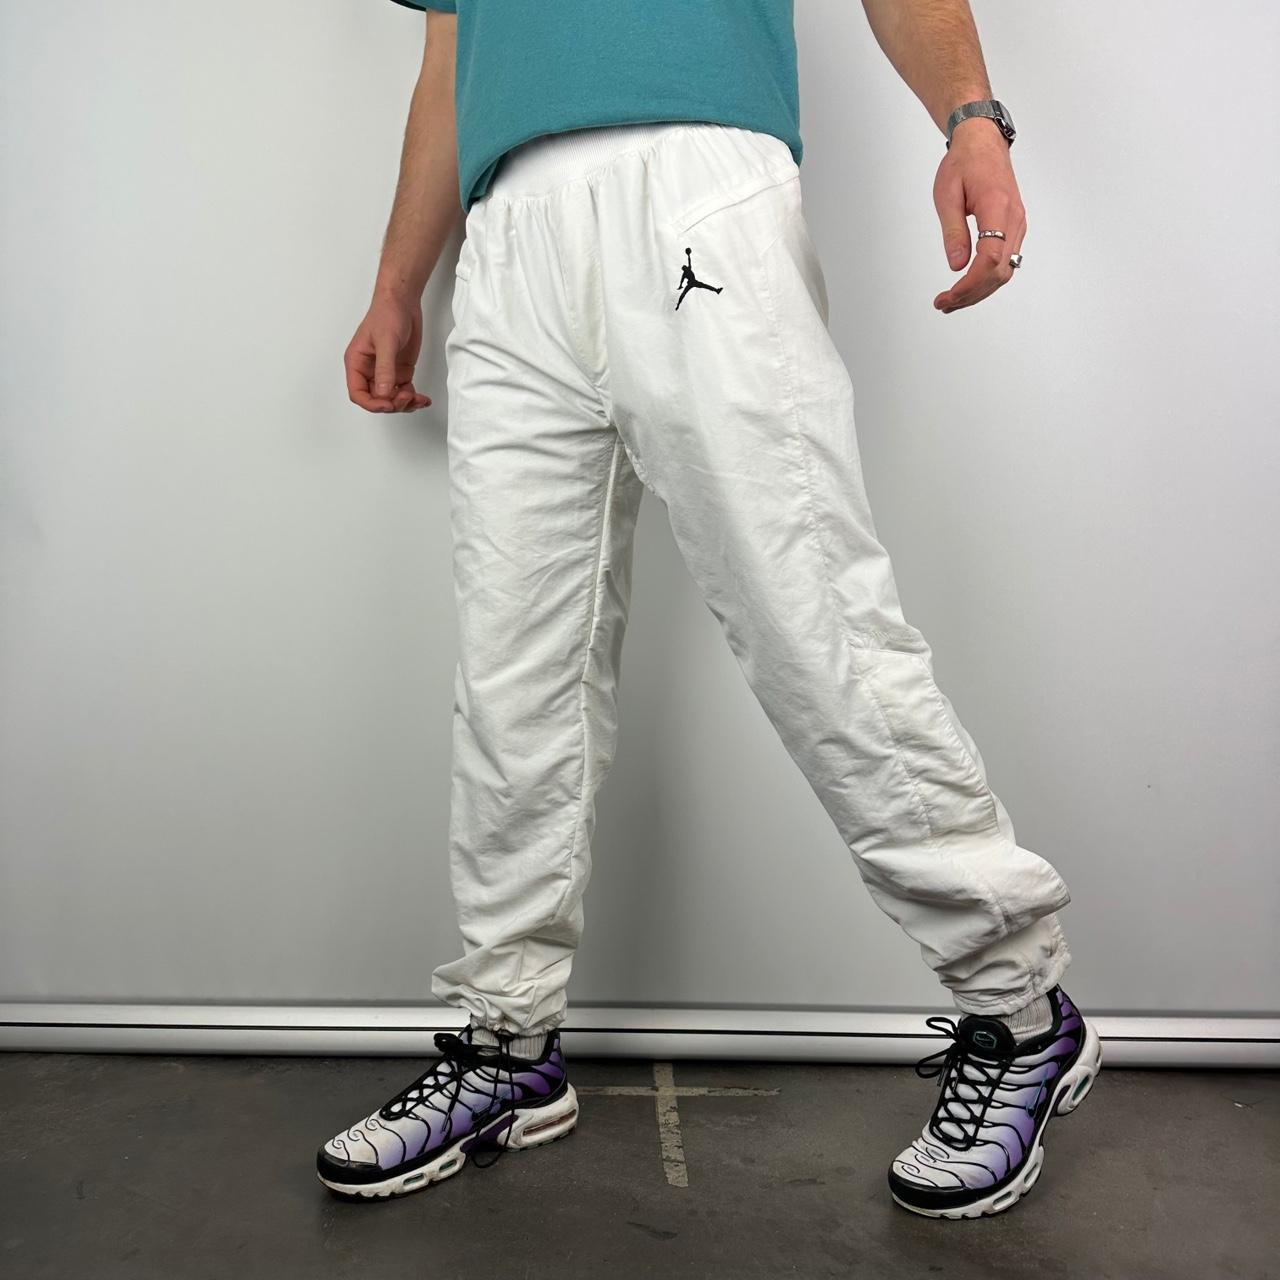 Buy Blue Cotton Track Pants For Men Online: TT Bazaar